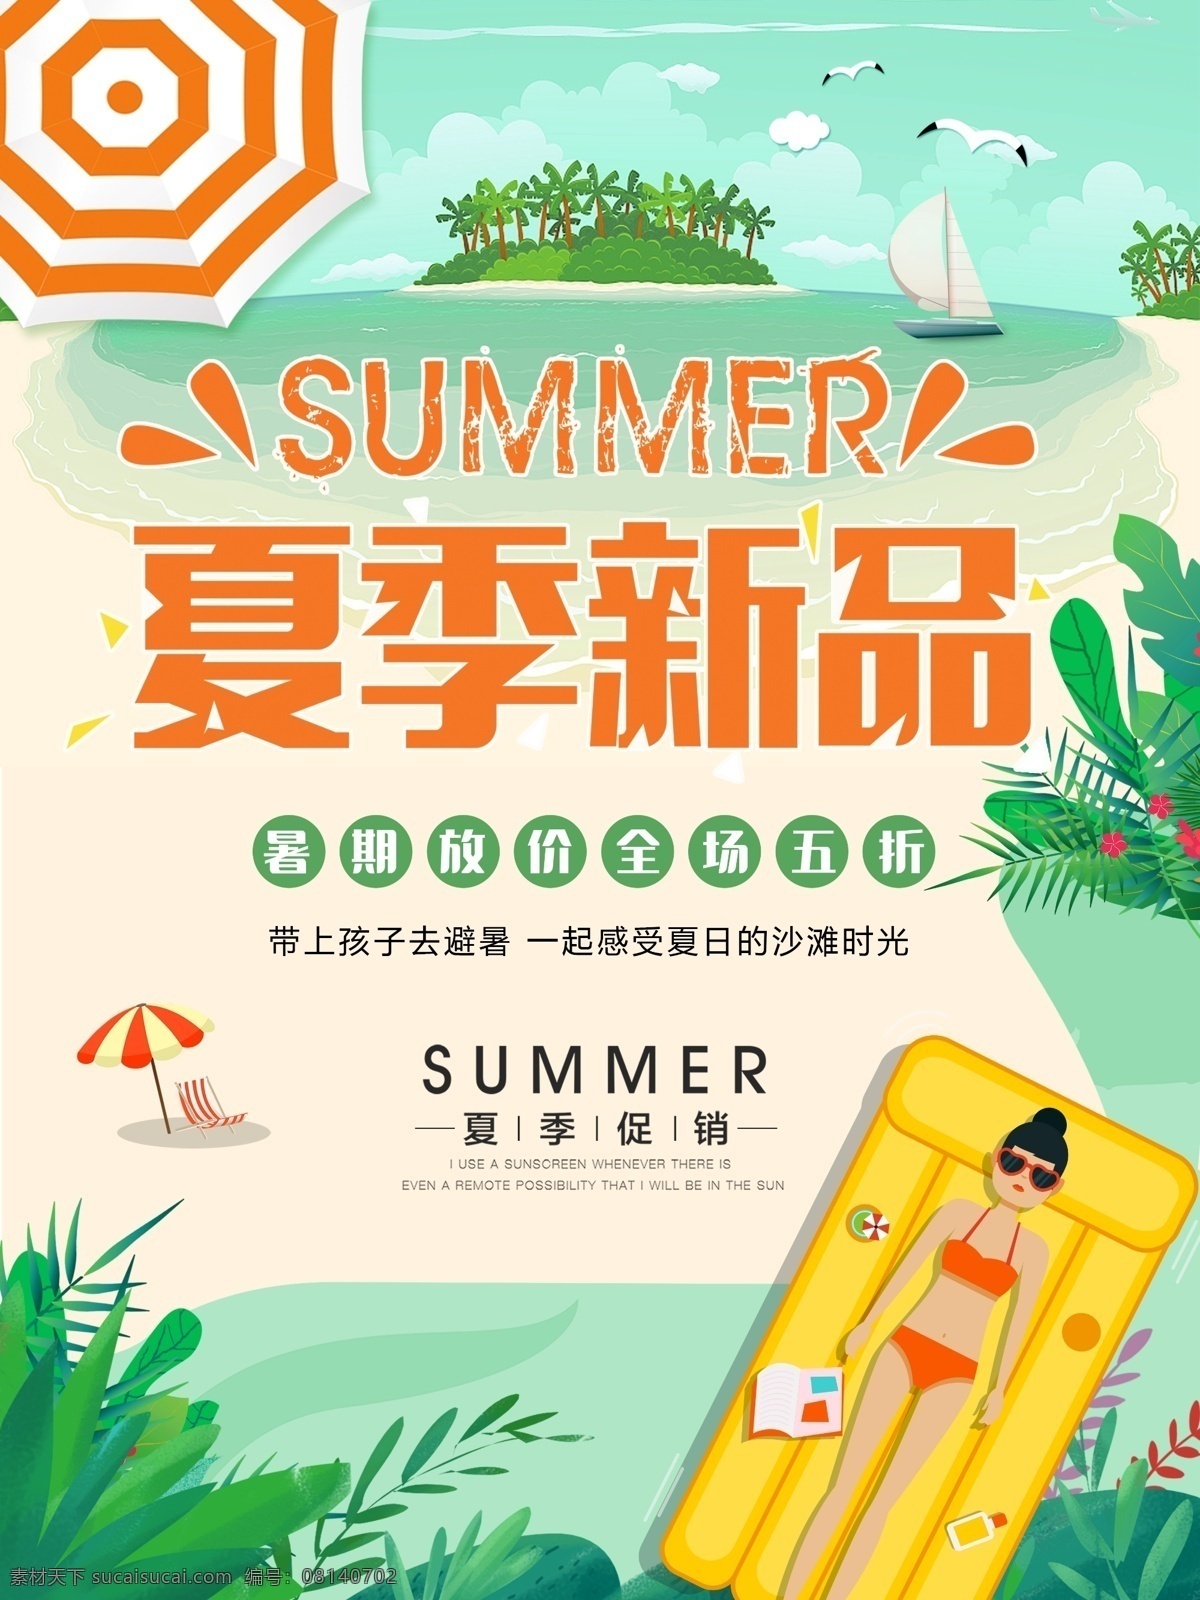 绿色 清新 夏季 夏日 夏天 新品 促销 海报 旅游 夏季促销 暑假 暑期 海边 绿叶 海岛 太阳伞 夏季新品